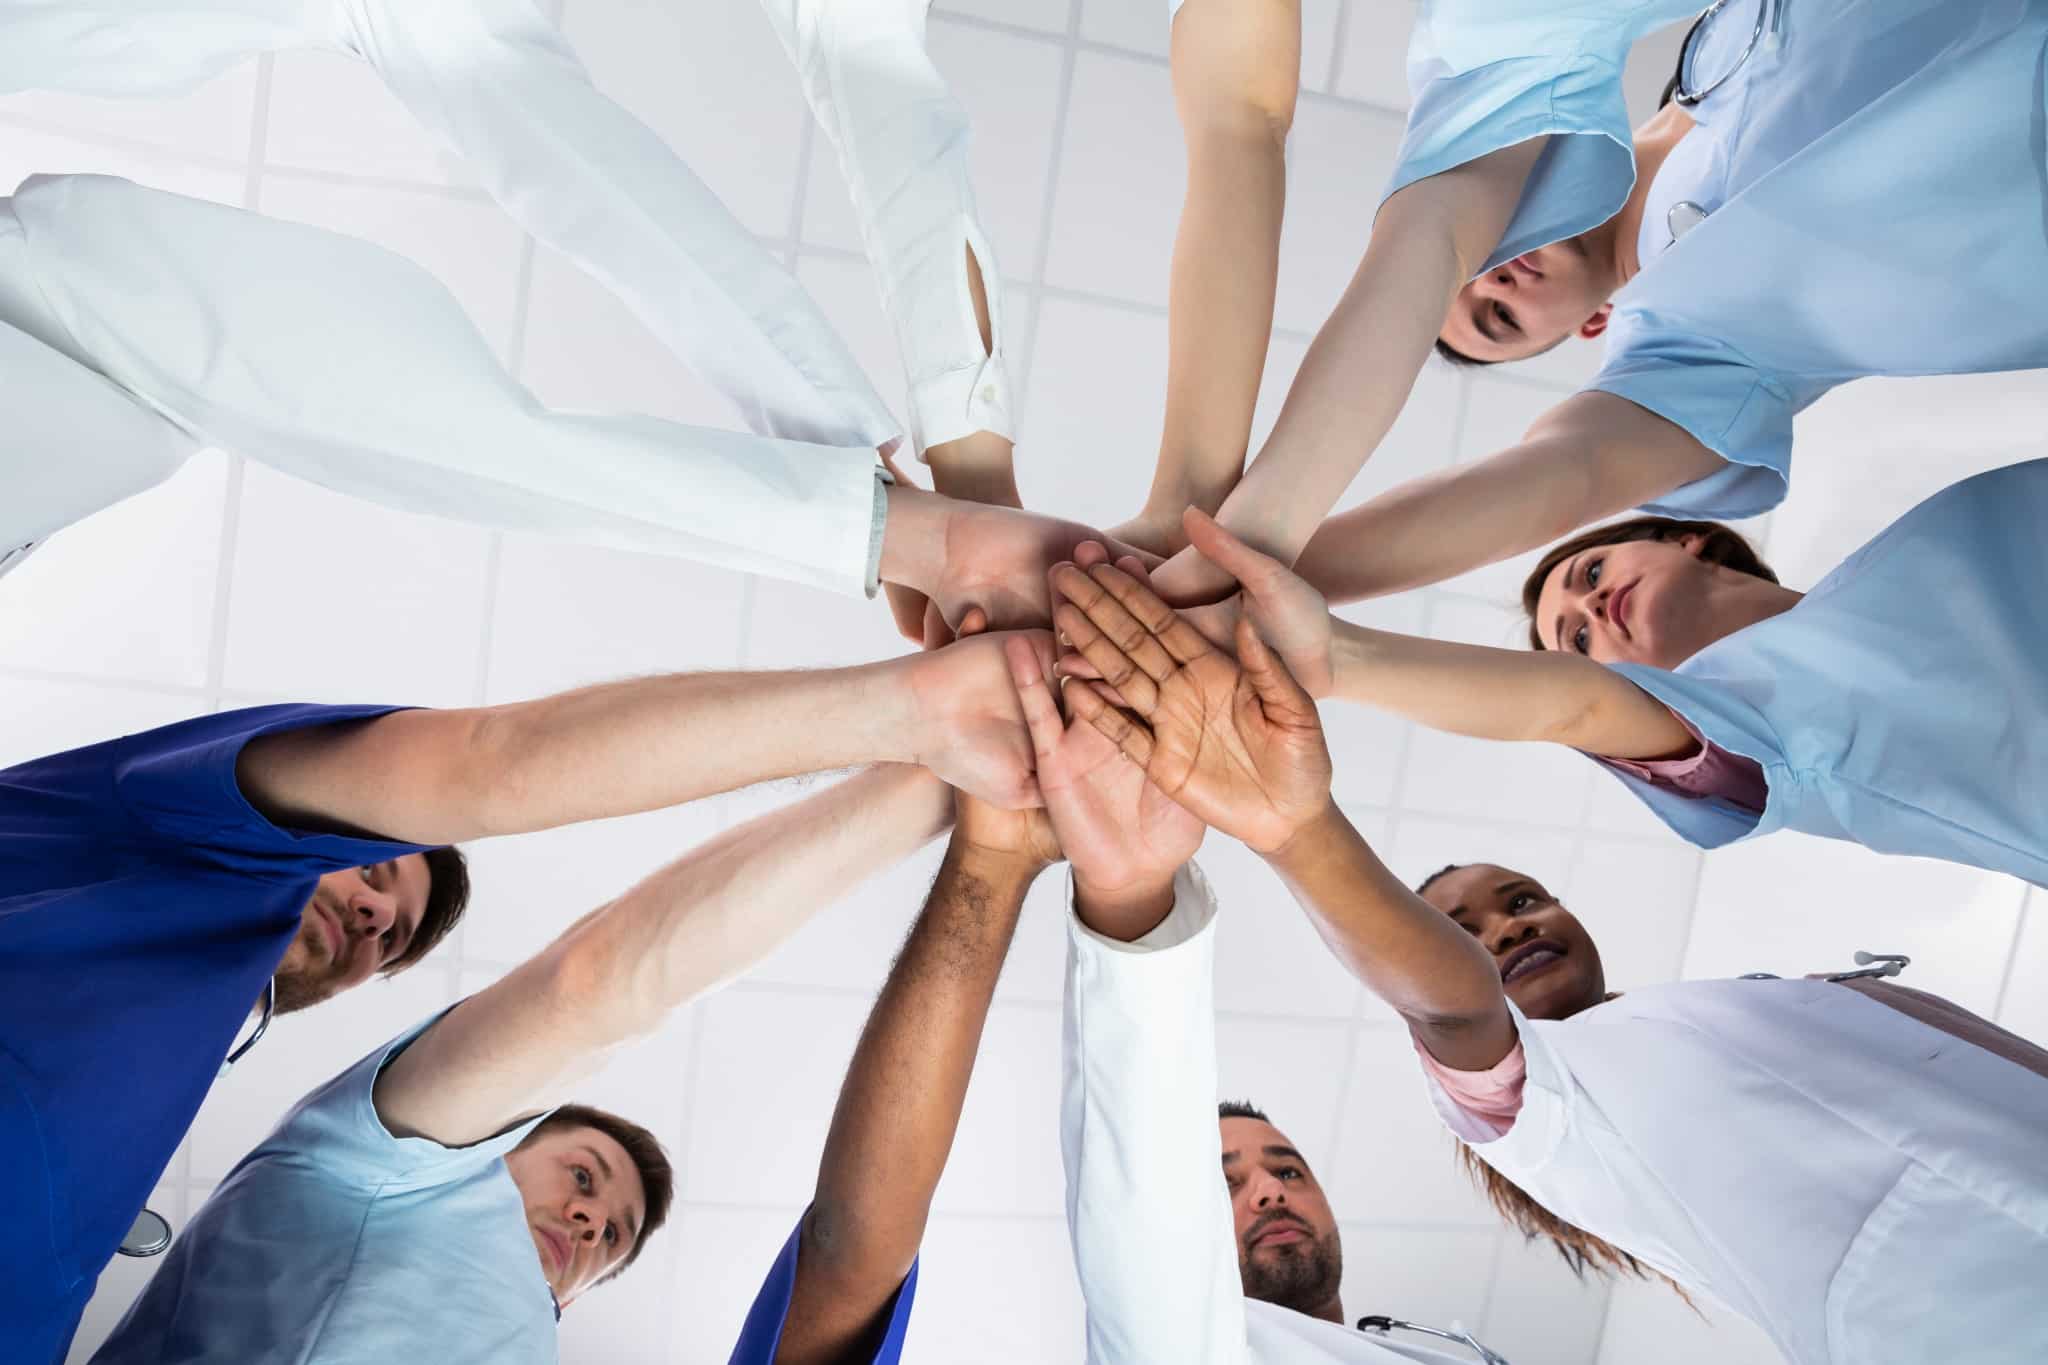 Teamwork between healthcare workers